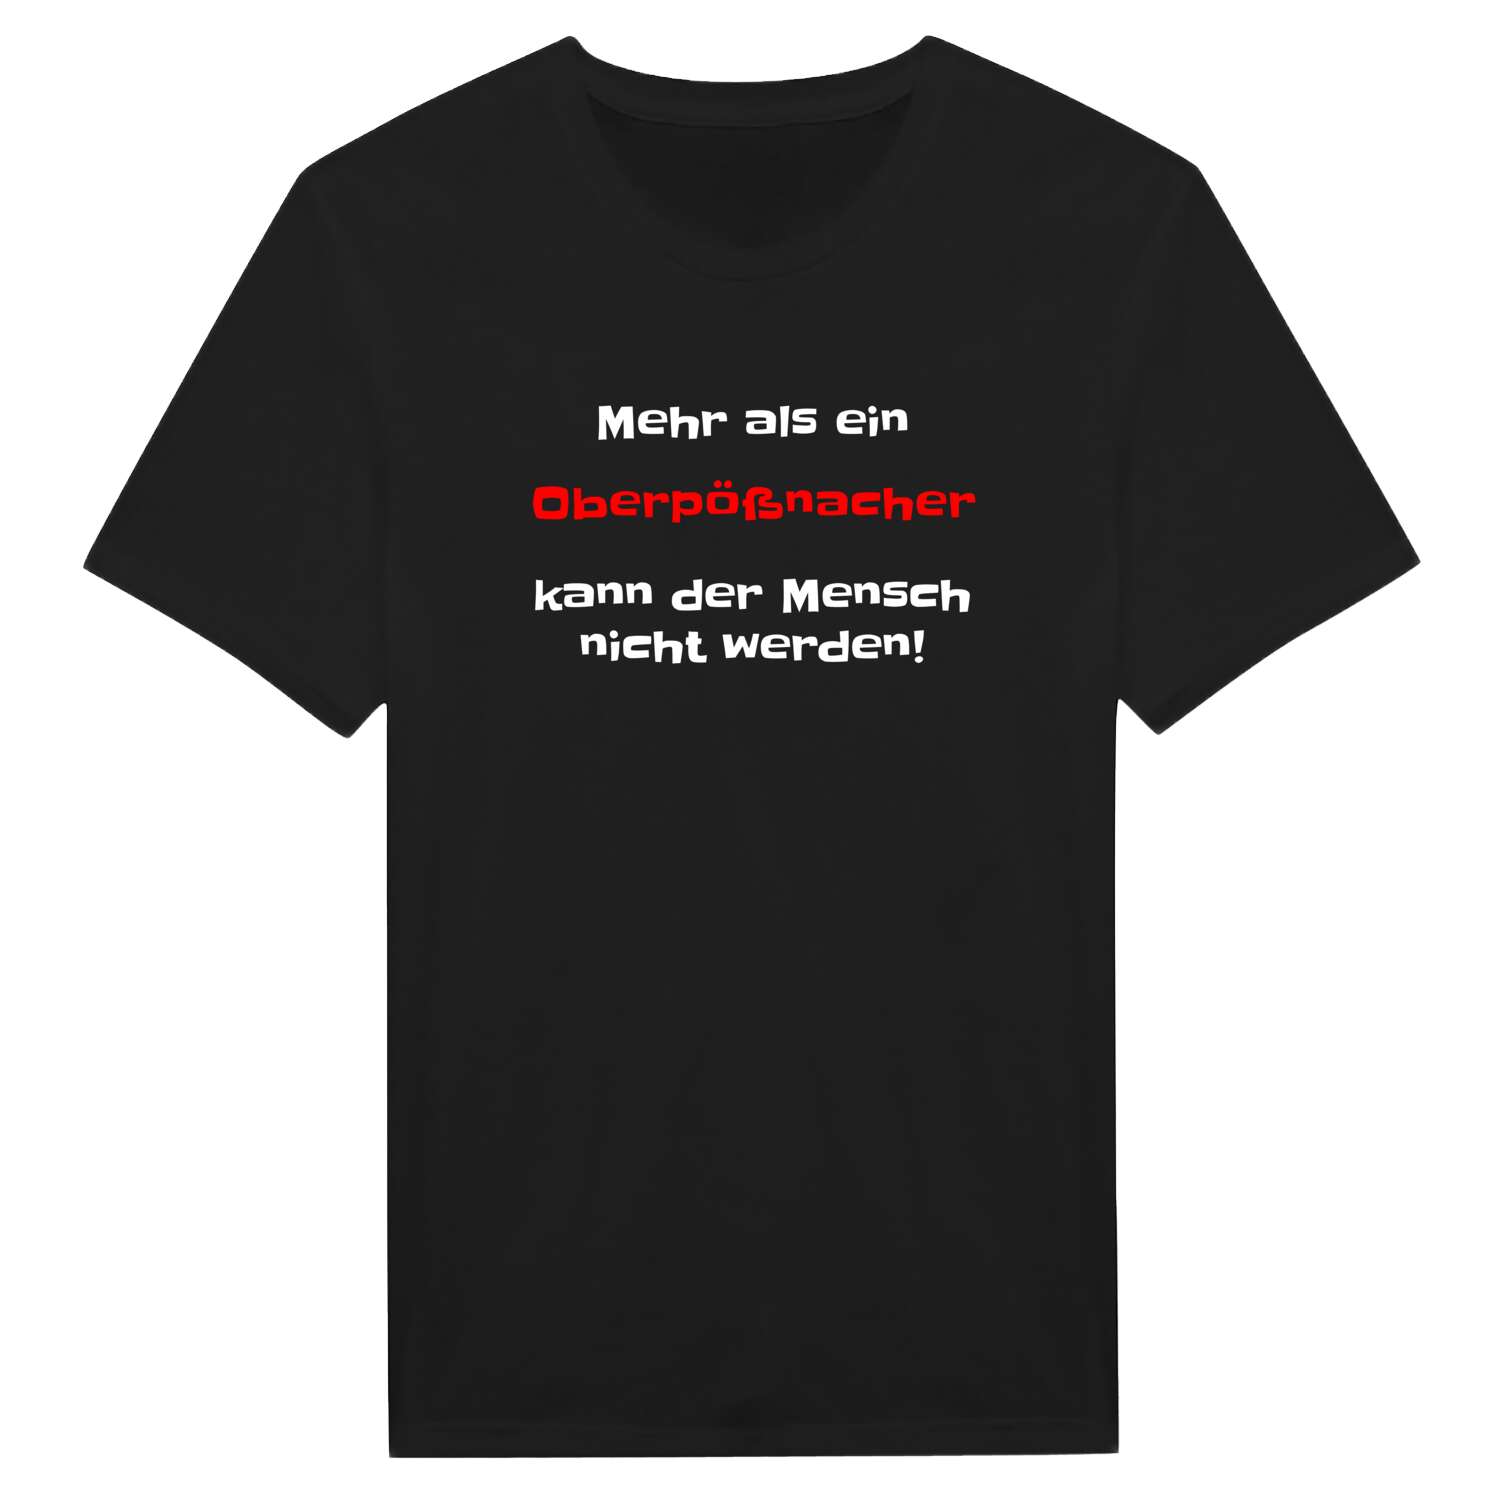 Oberpößnach T-Shirt »Mehr als ein«